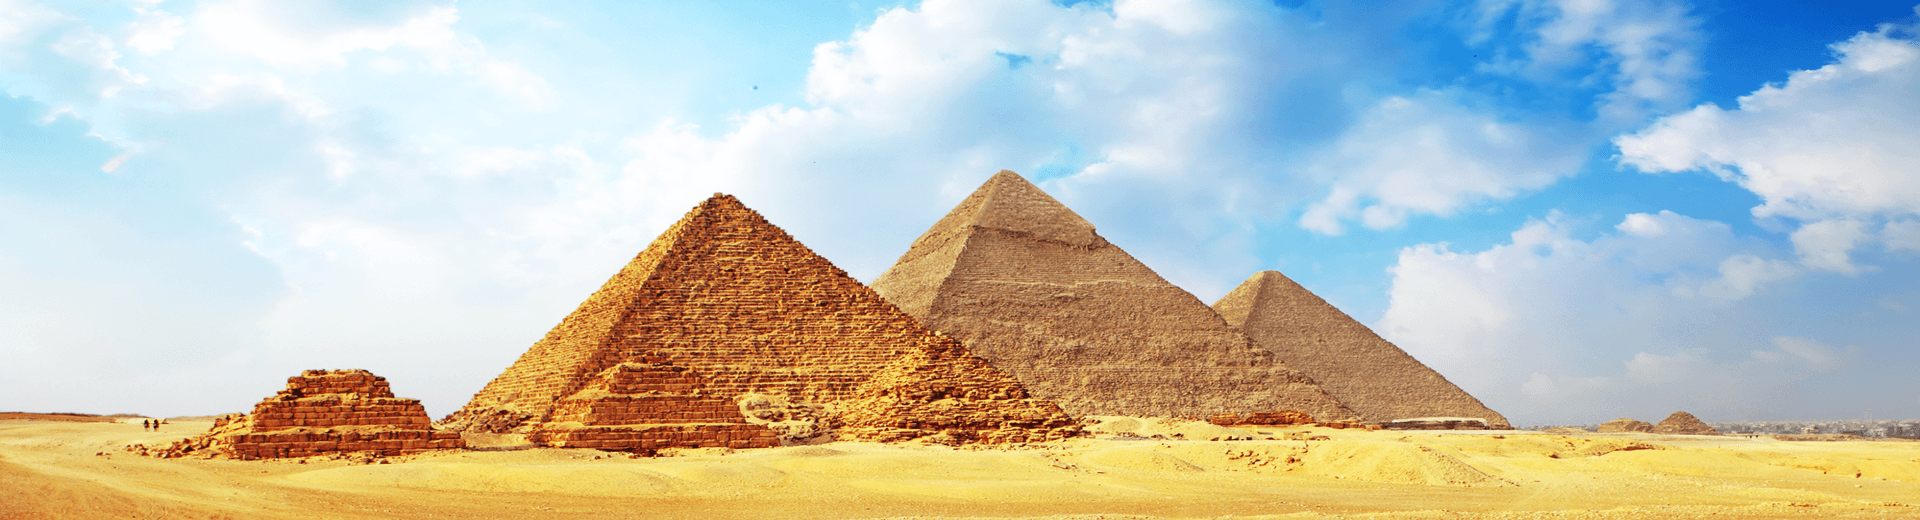 טיולים מאורגנים למצרים